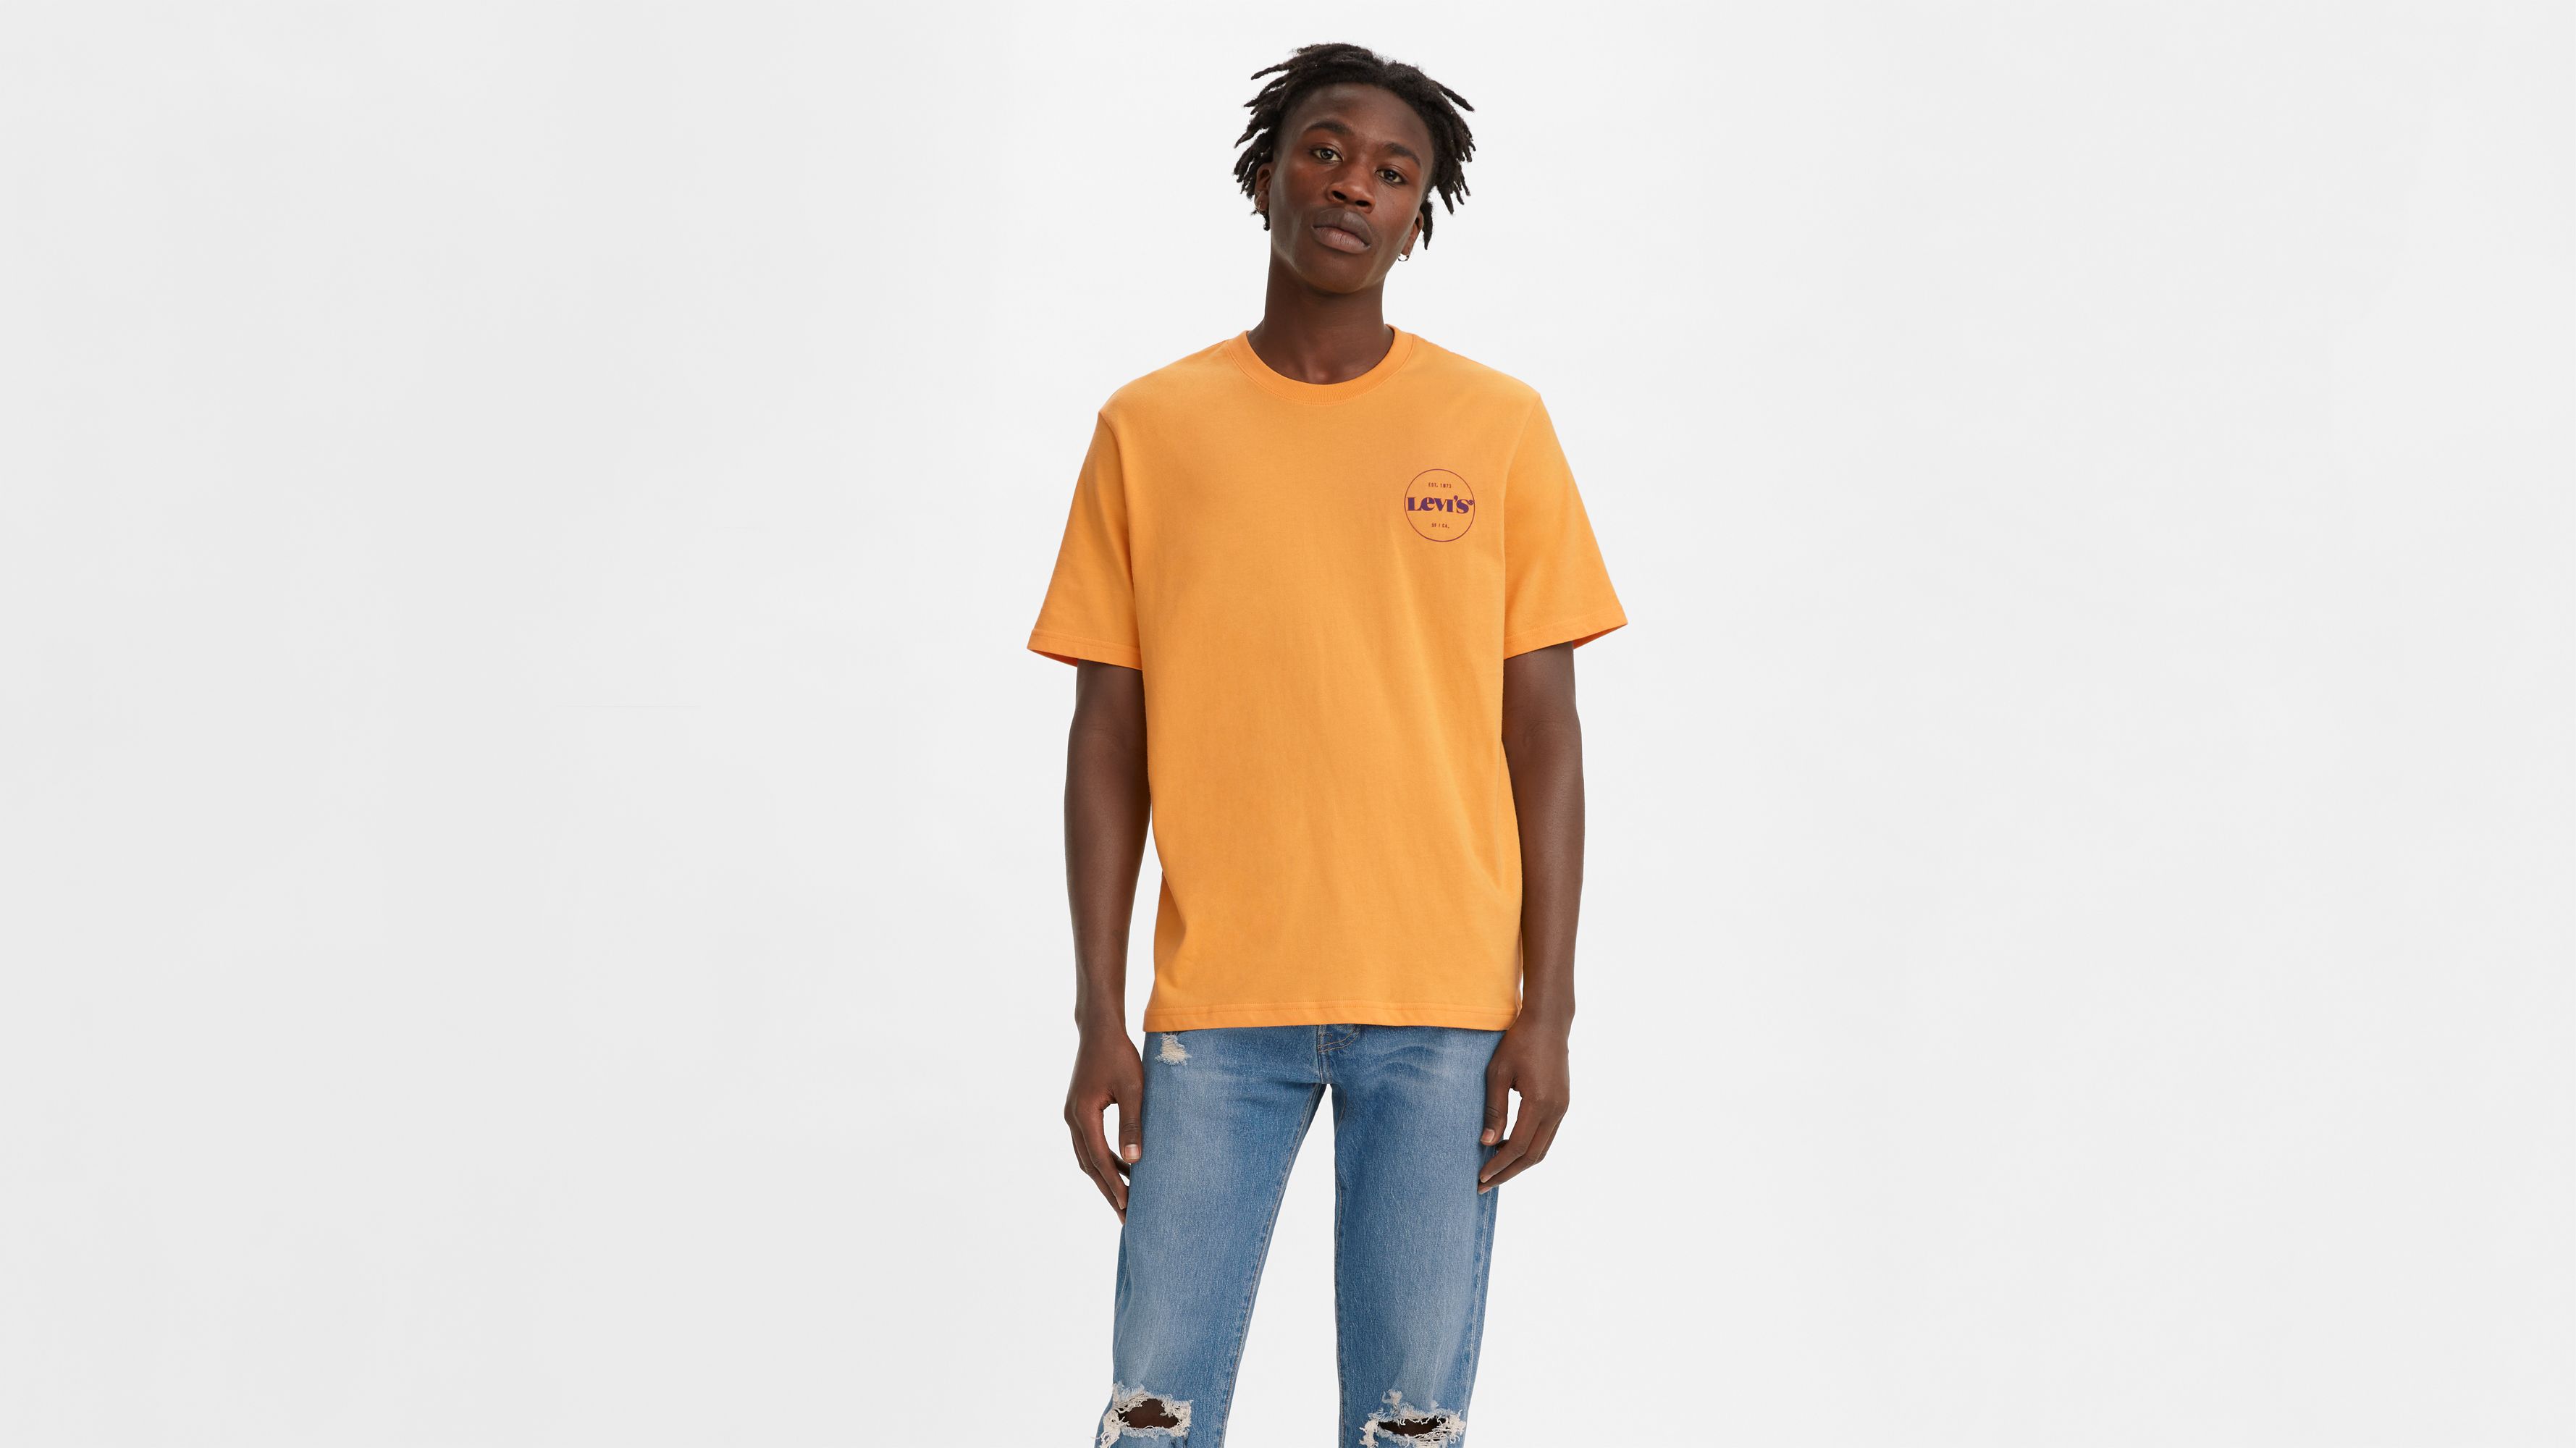 levis orange t shirt